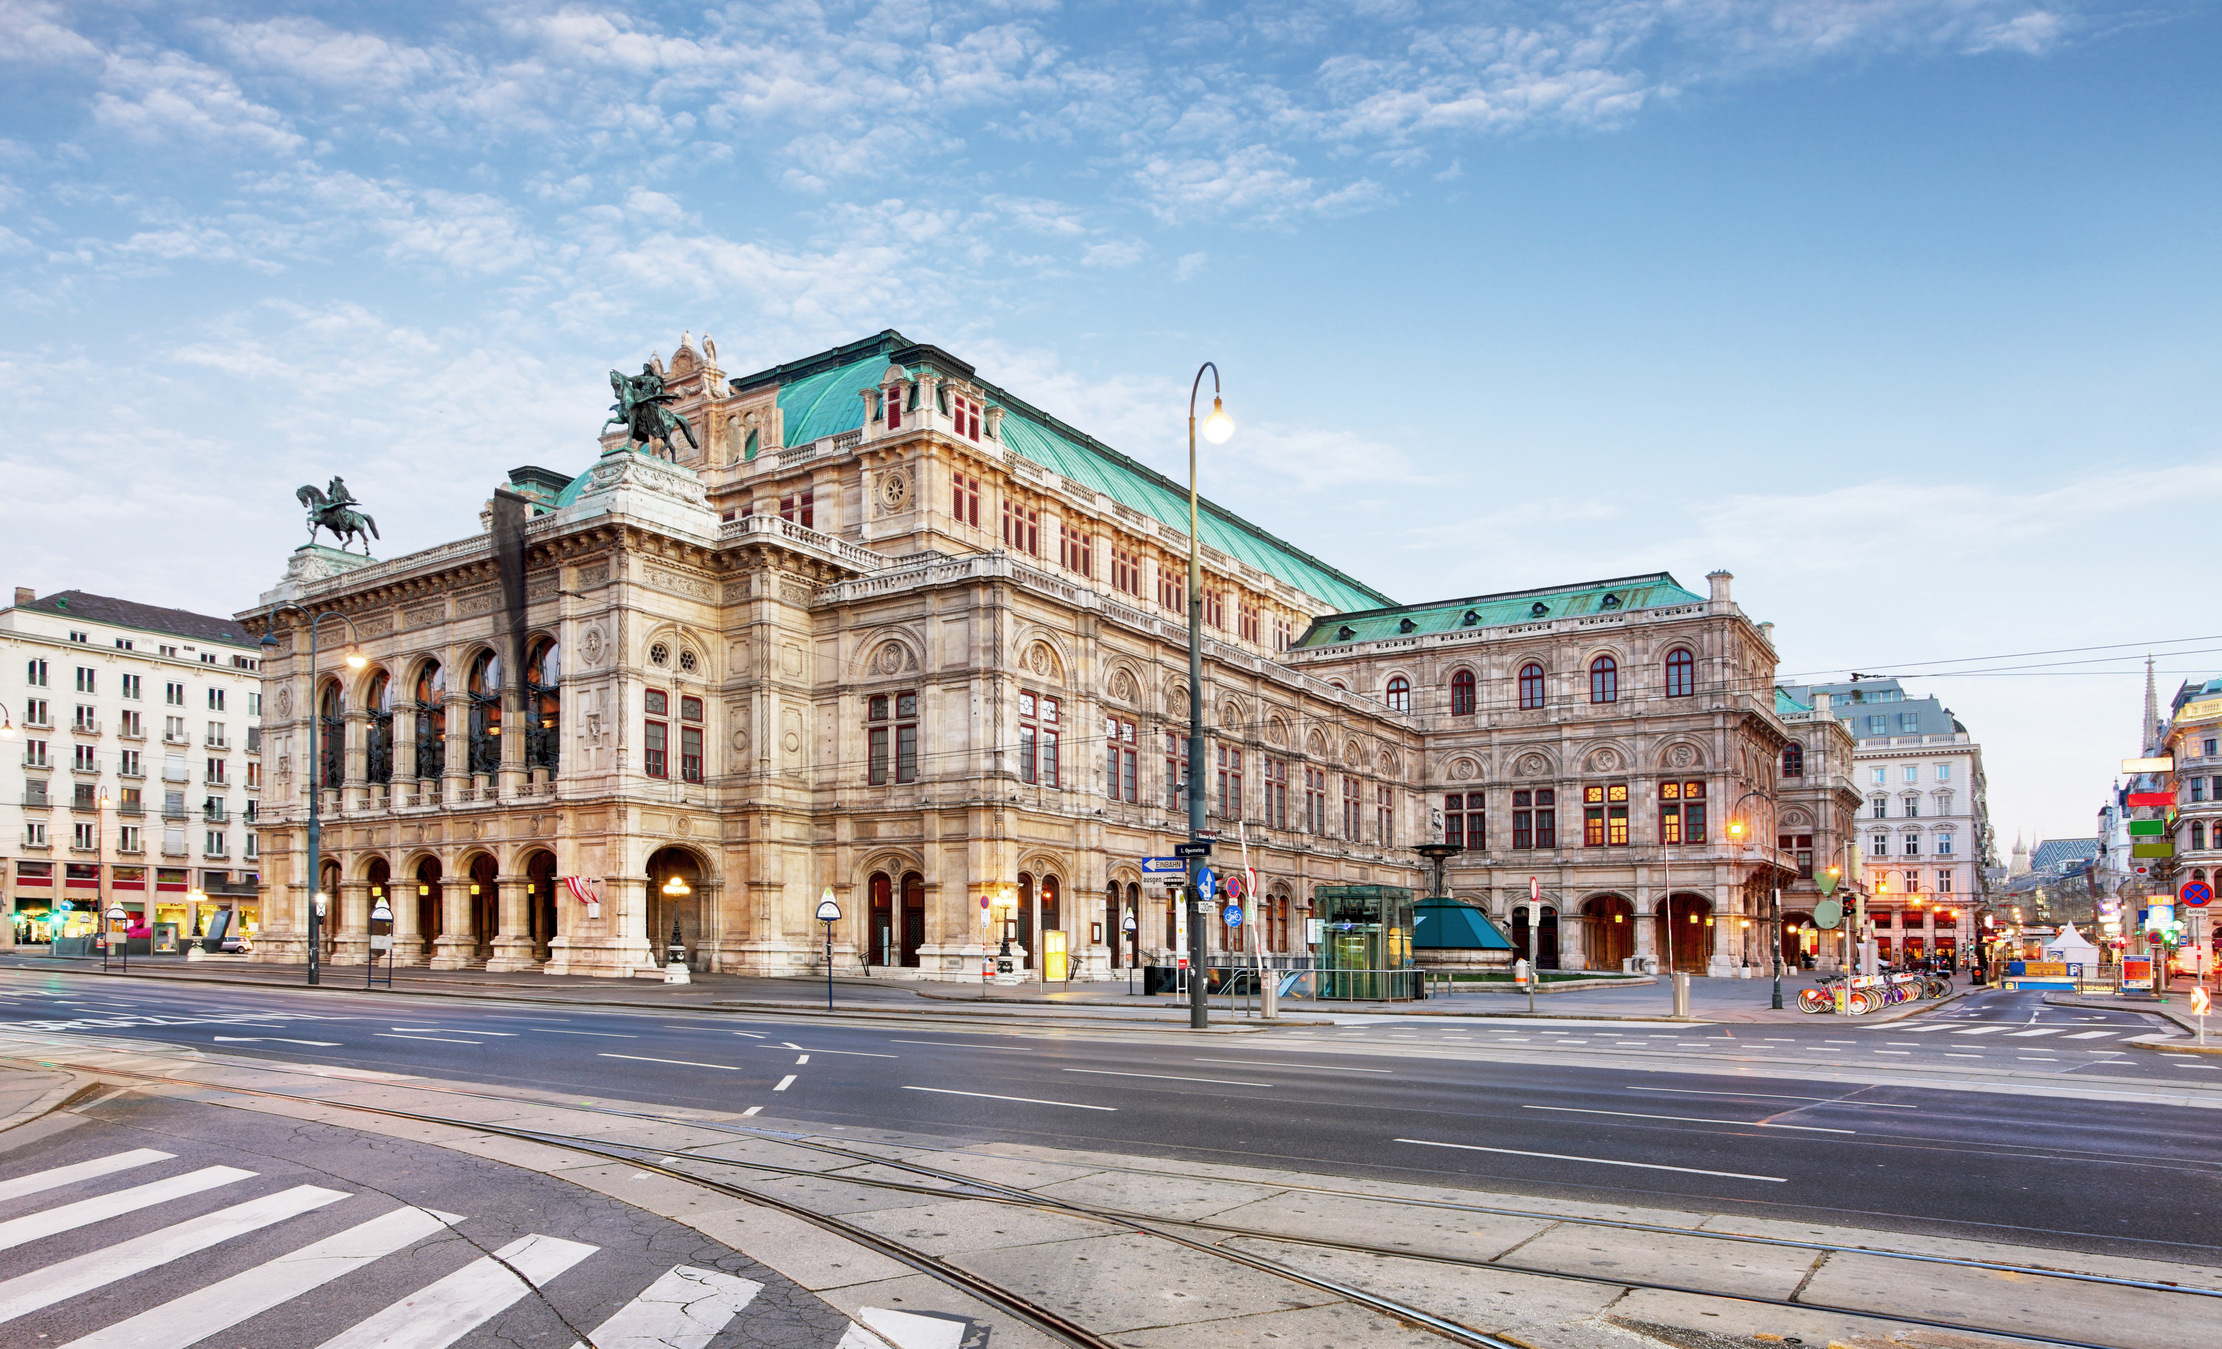 7. Виена, Австрия. Кой не би искал да посети този красив и изтънчен град. Бърз и удобен транспорт и забележителности на всеки ъгъл.